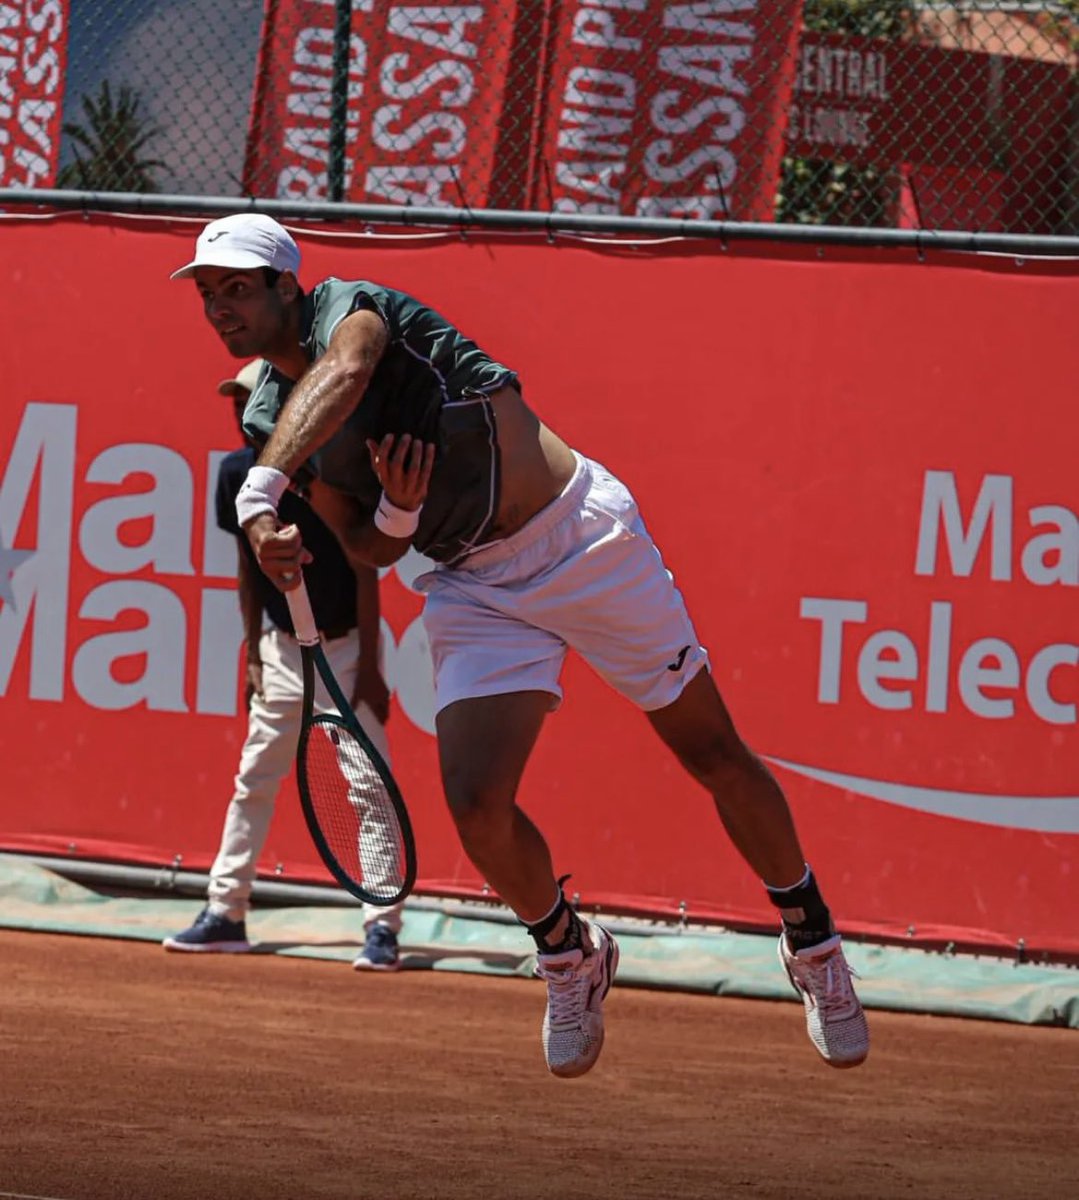 #Tenis 🎾 | #GrandPrixHassanll (Marrakech) 🇲🇦 - 1R:

Nicolas #Alboran 🇺🇸 a Facundo #DiazAcosta 🇦🇷 6-4 3-6 6-3